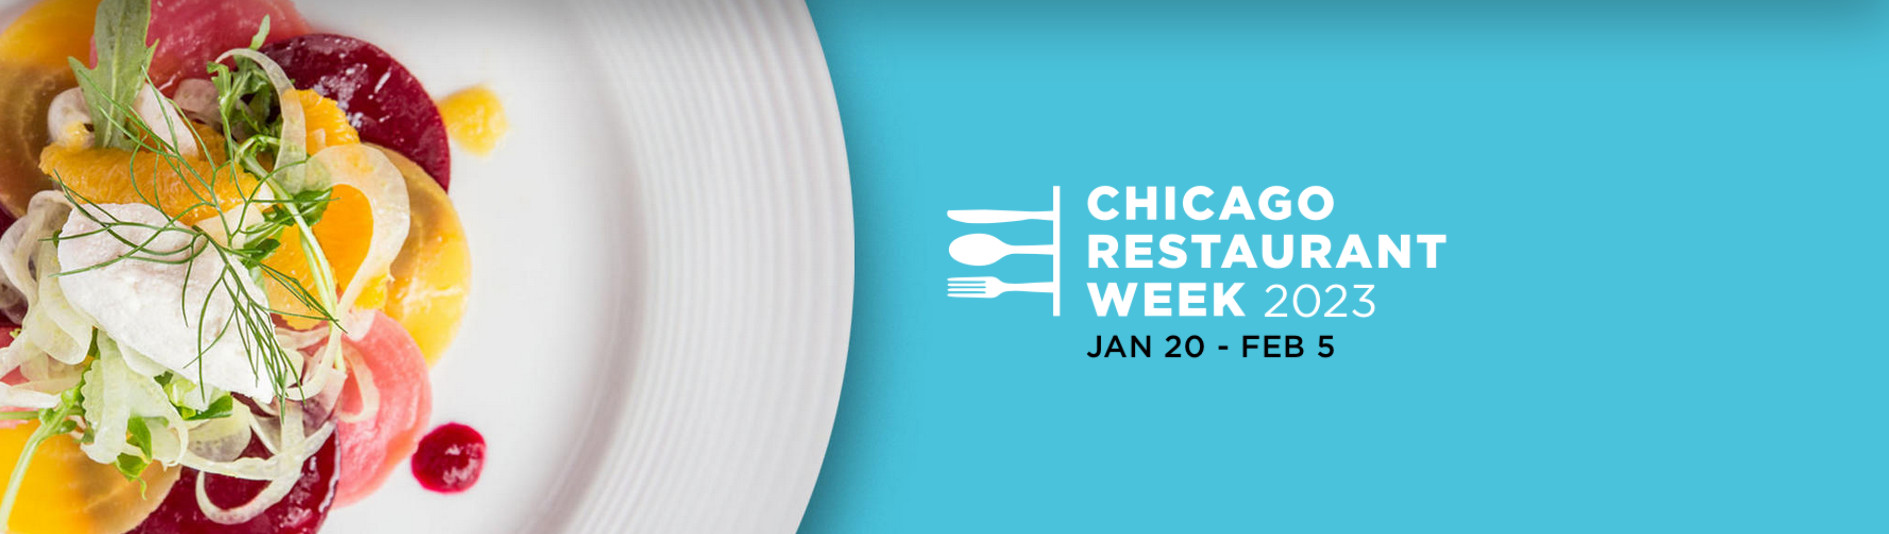 Chicago Restaurant Week 2023 Chicago Gen X Chicago Bars, Events